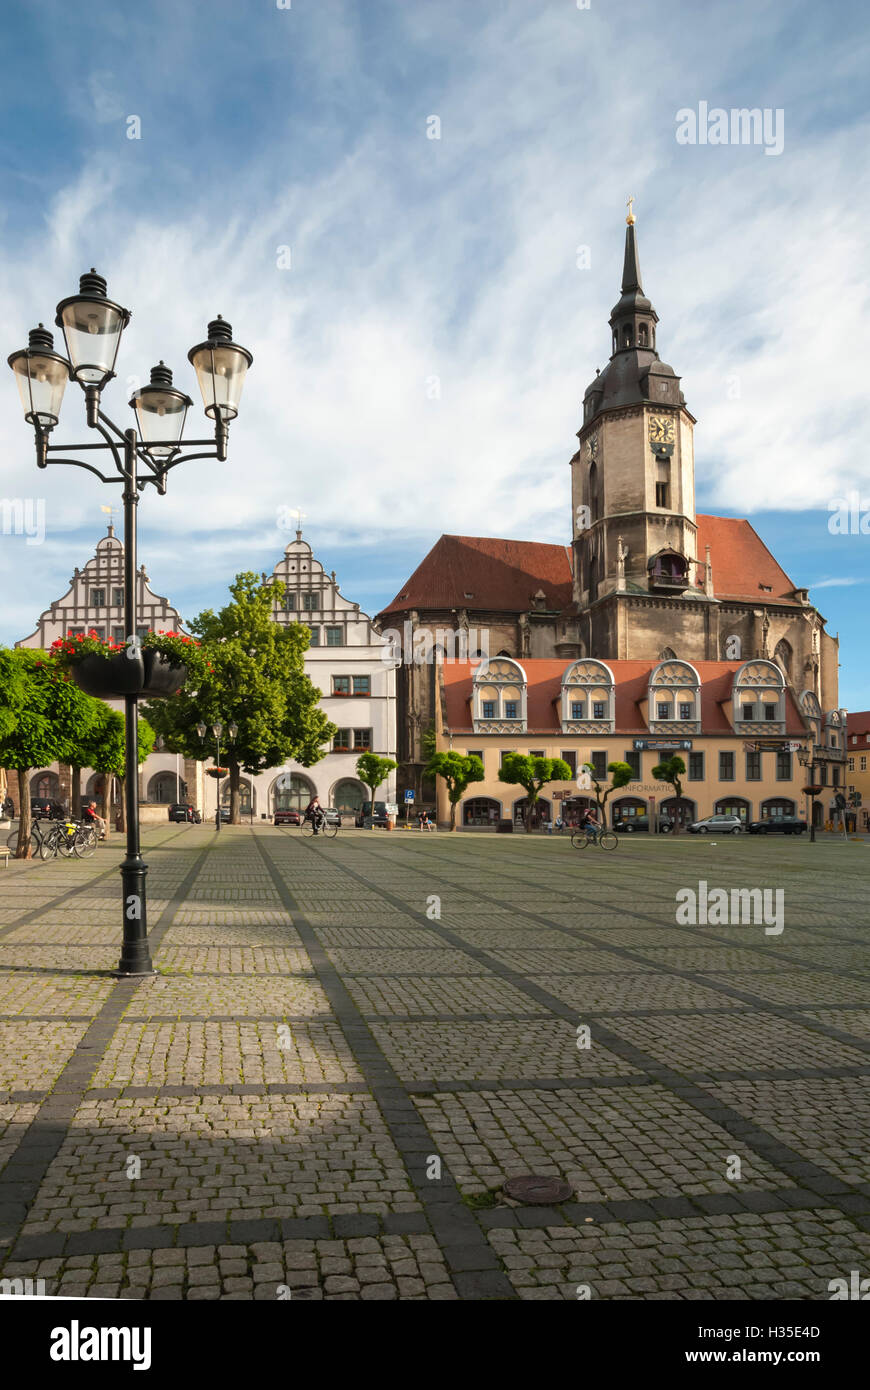 Plaza de la ciudad, la iglesia parroquial de San Venceslao, Naumburg, Sajonia-Anhalt, Alemania Foto de stock